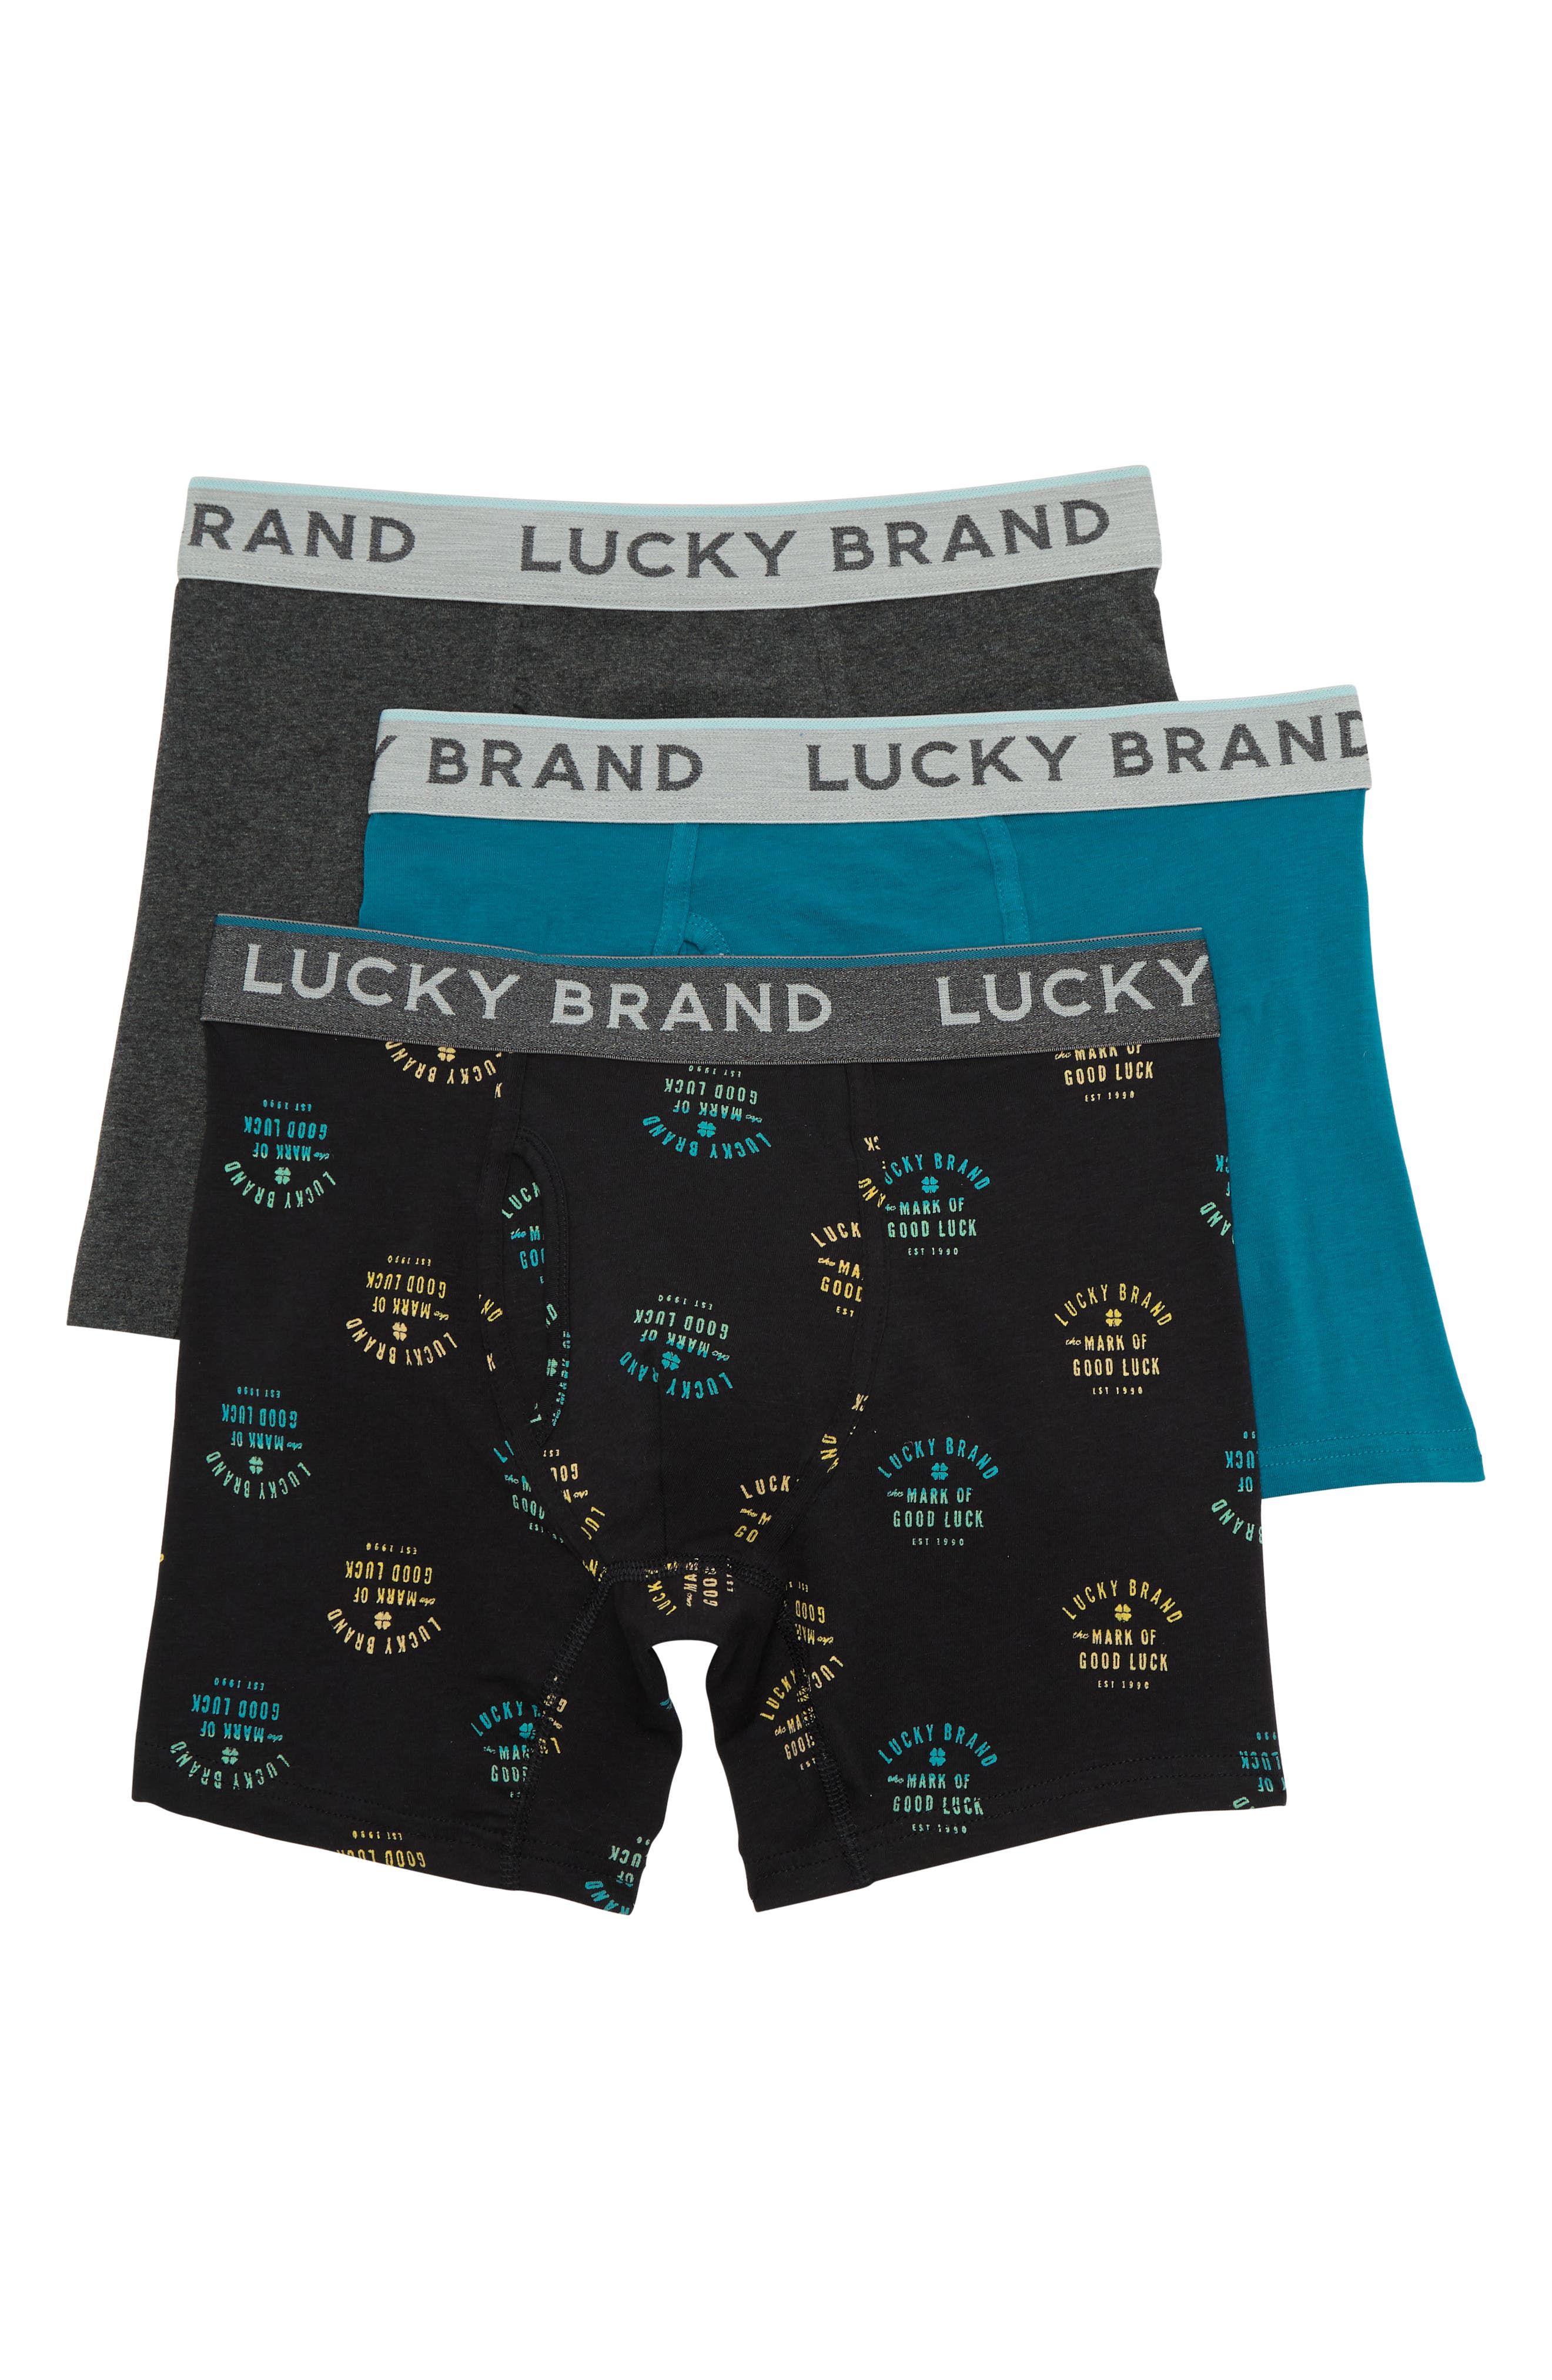 Nouveau LUCKY BRAND Underwear Boxer homme L Bleu Marine $21 Retail 